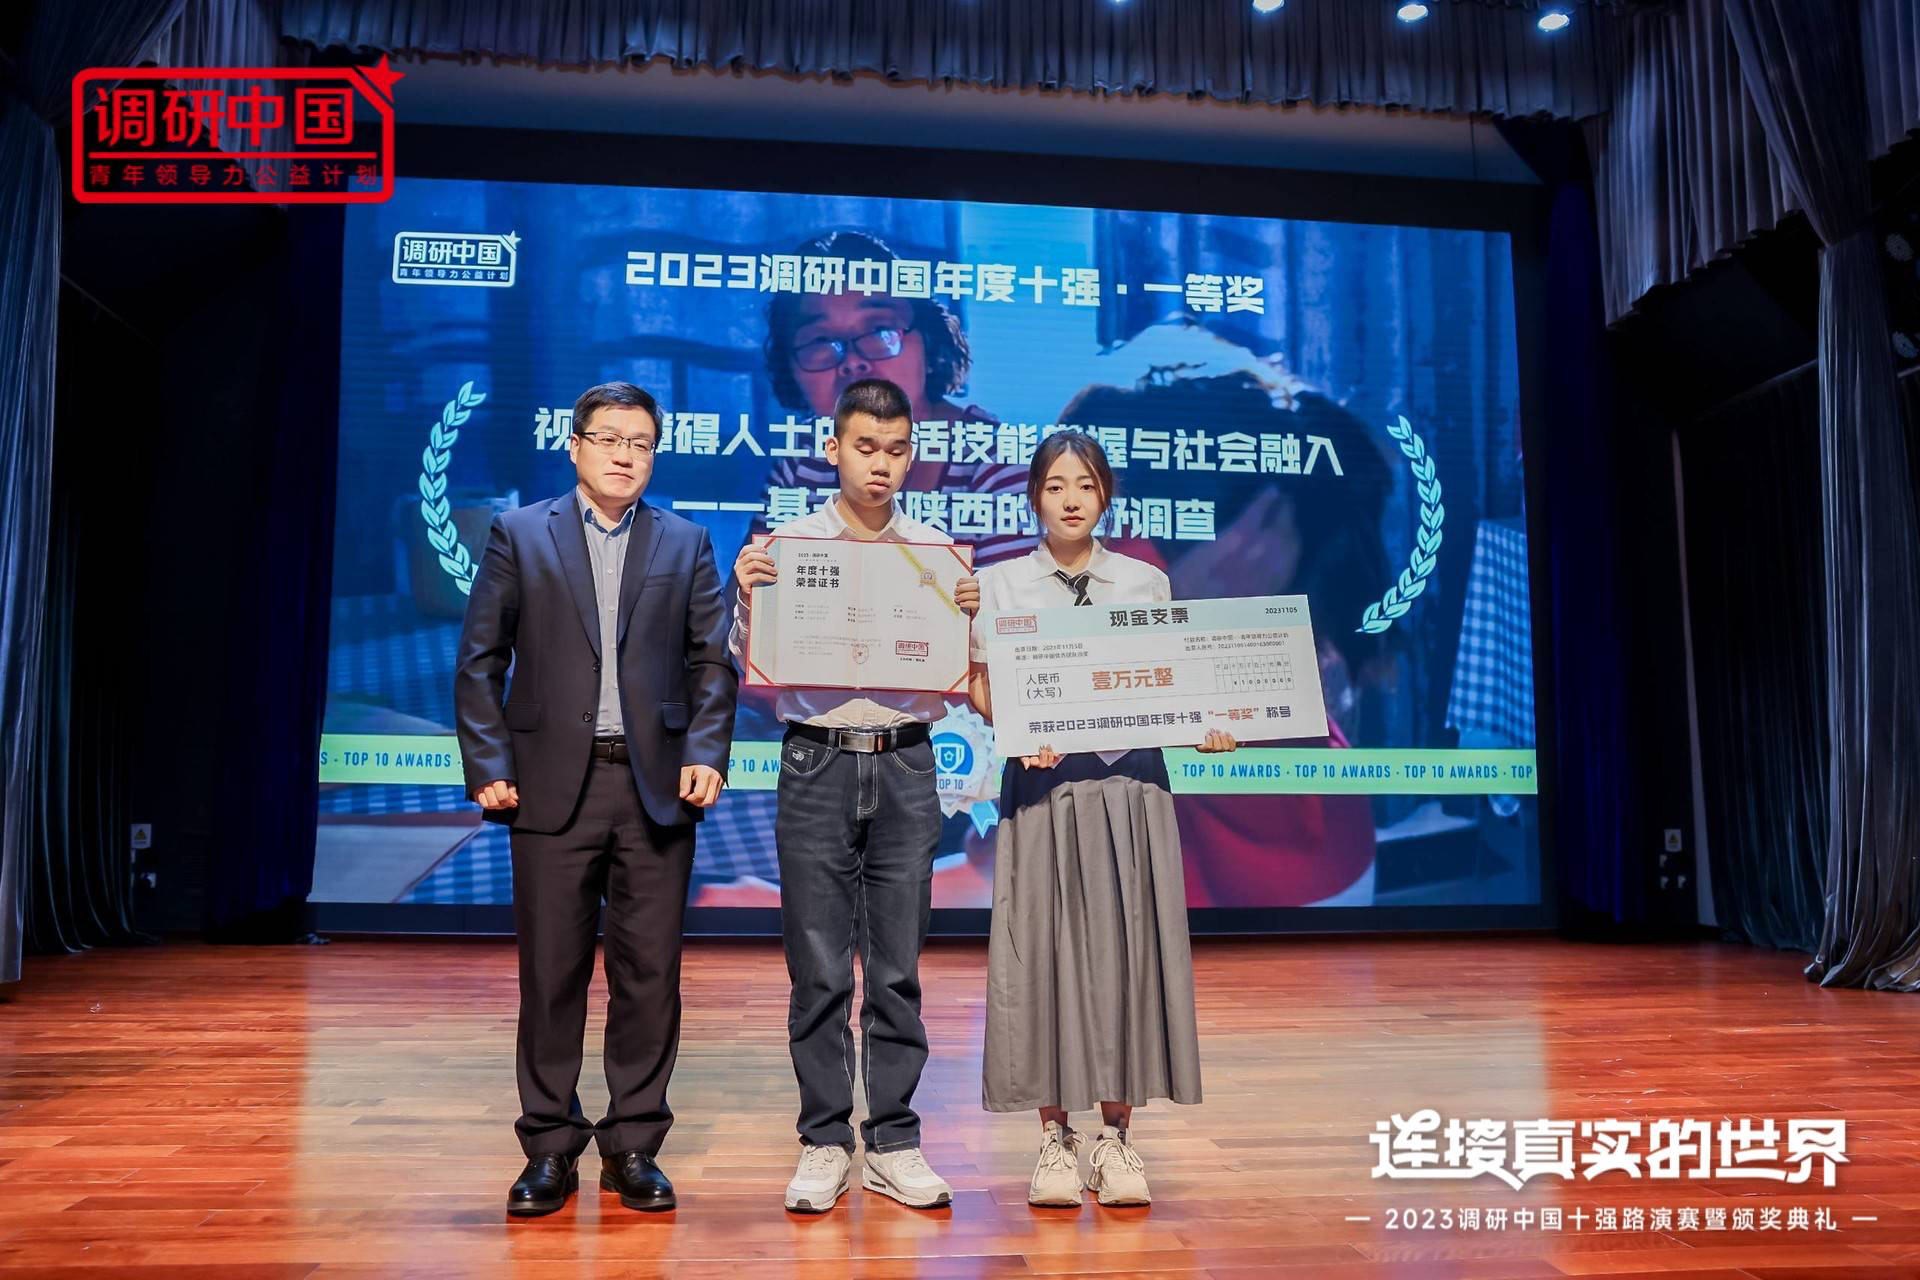 西浦学生聚焦视障者社会融入 荣获南风窗2023调研中国年度冠军